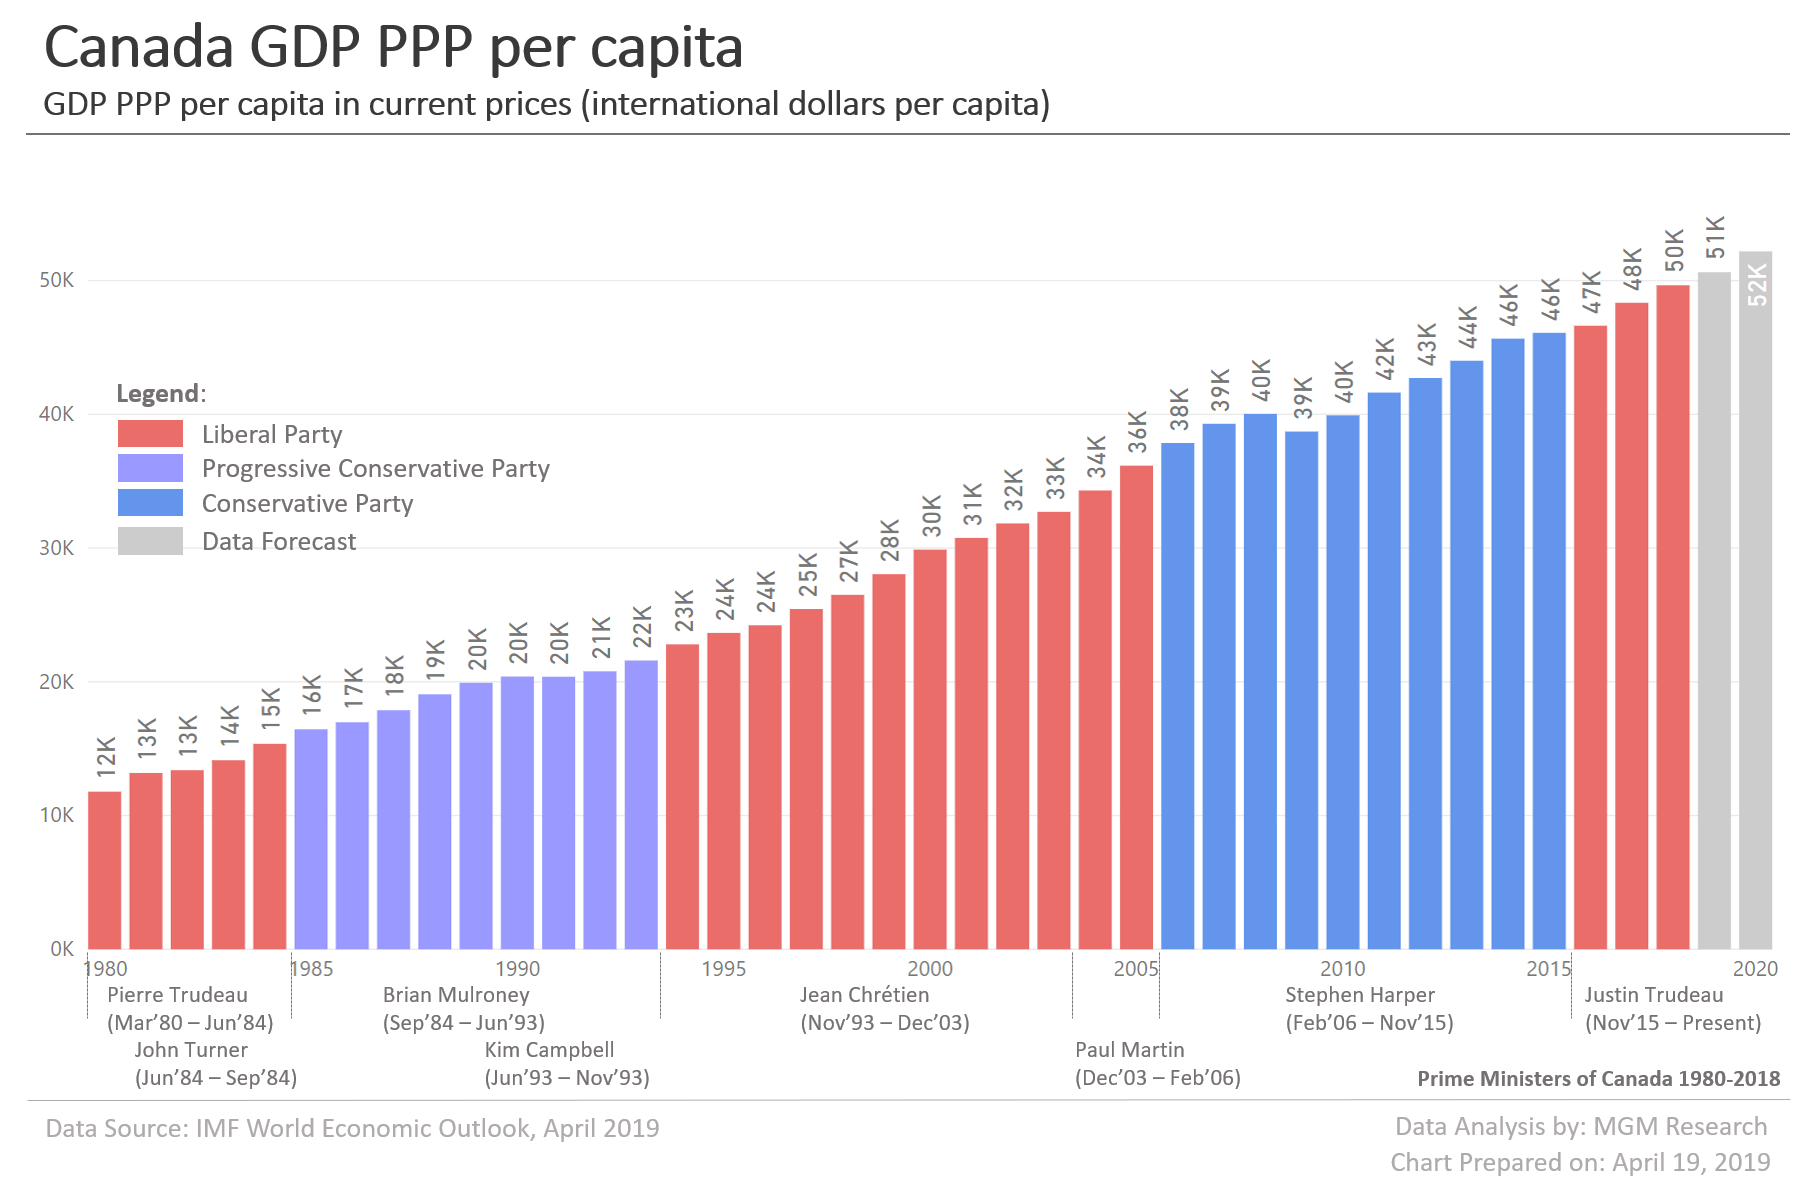 Canada GDP PPP per capita 1980-2020